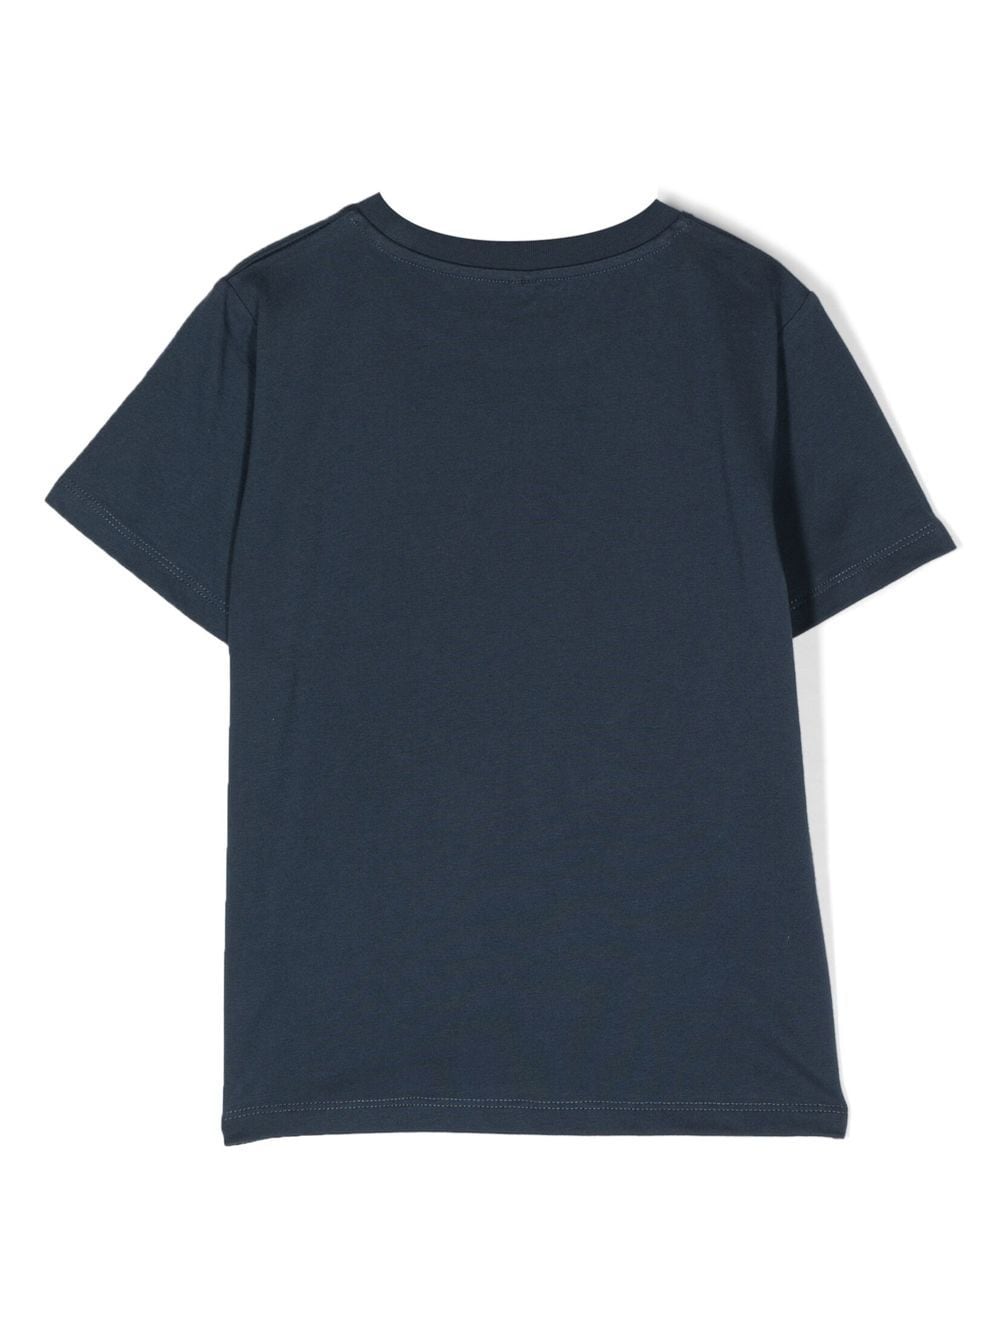 T-shirt blu per bambini con logo